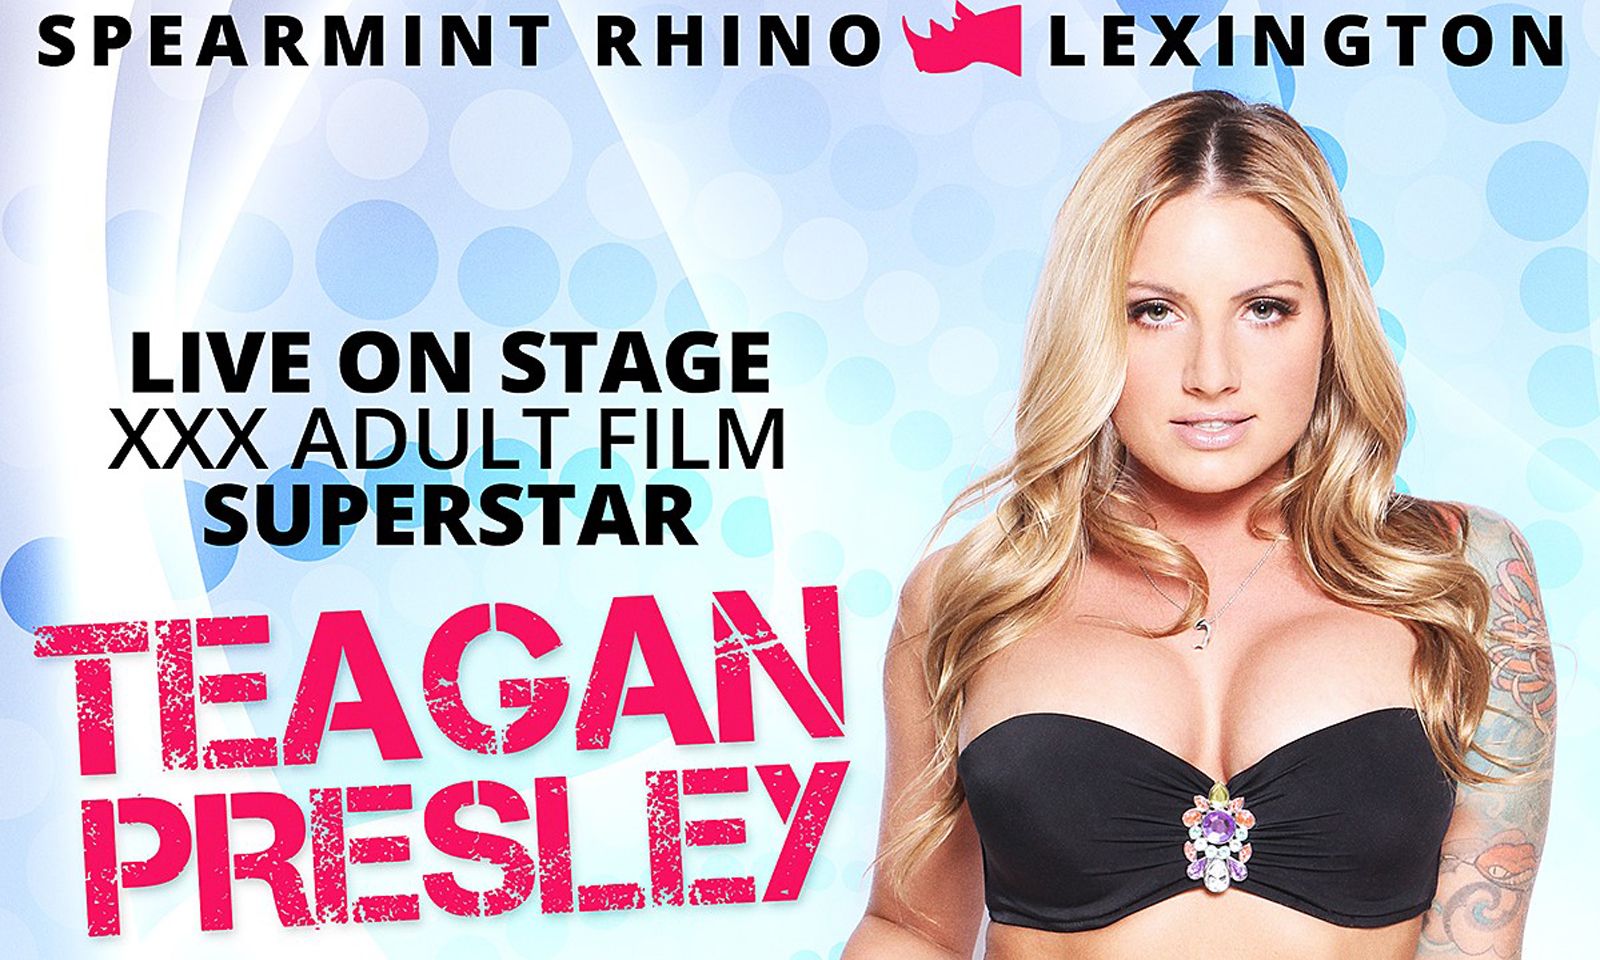 Teagan Presley to Ignite Stage at Spearmint Rhino Lexington